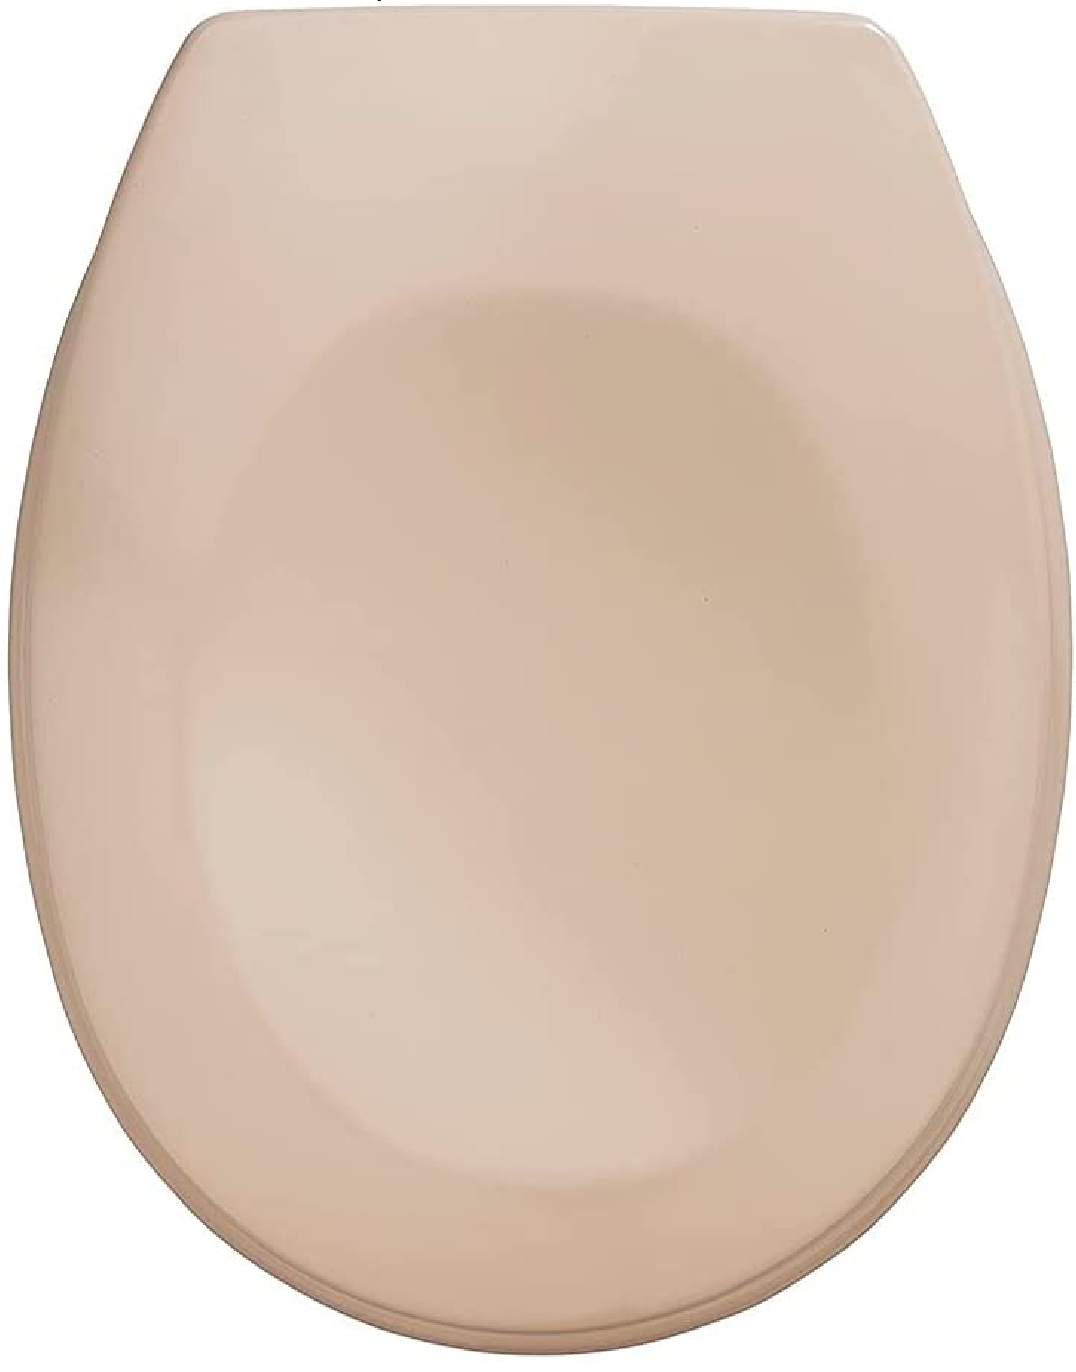 WC-Sitz Bergamo Beige - Antibakterieller Toilettensitz, verstellbare, rostfreie Edelstahlbefestigung, Duroplast, 35 x 44.4 cm, Beige